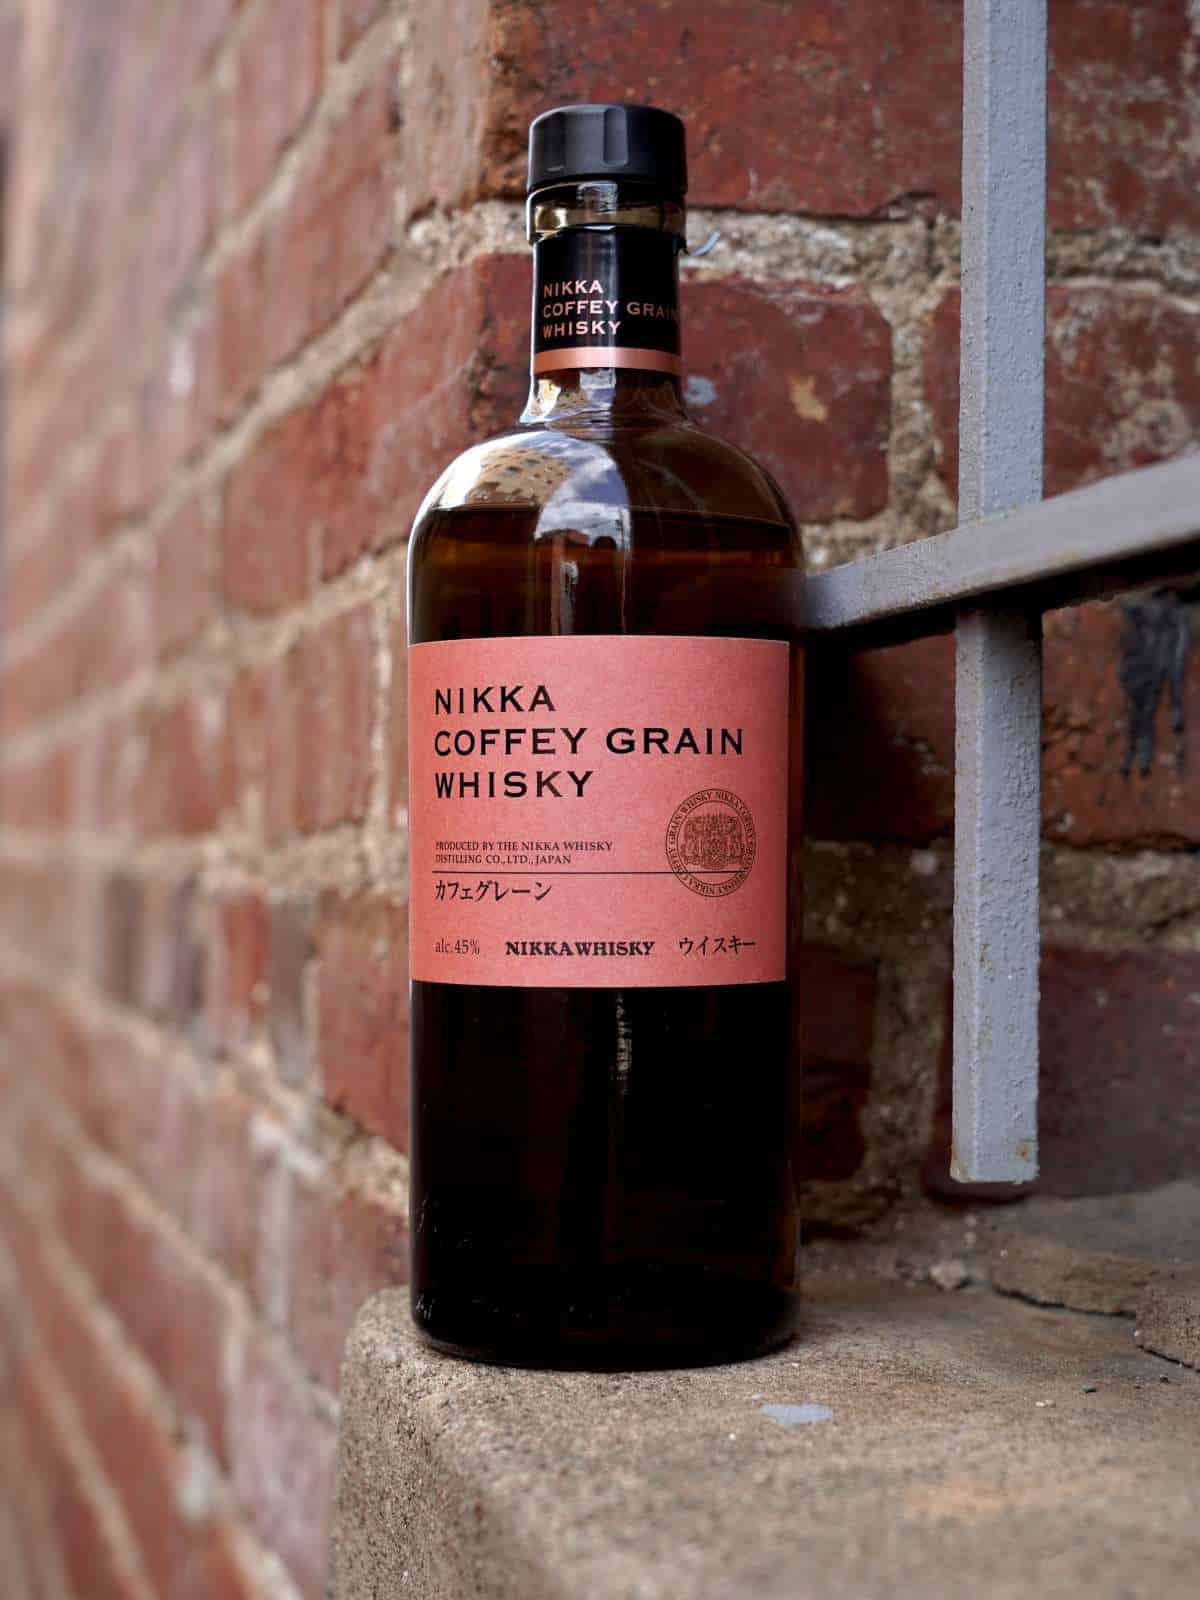 Nikka Coffey Grain Whisky featured